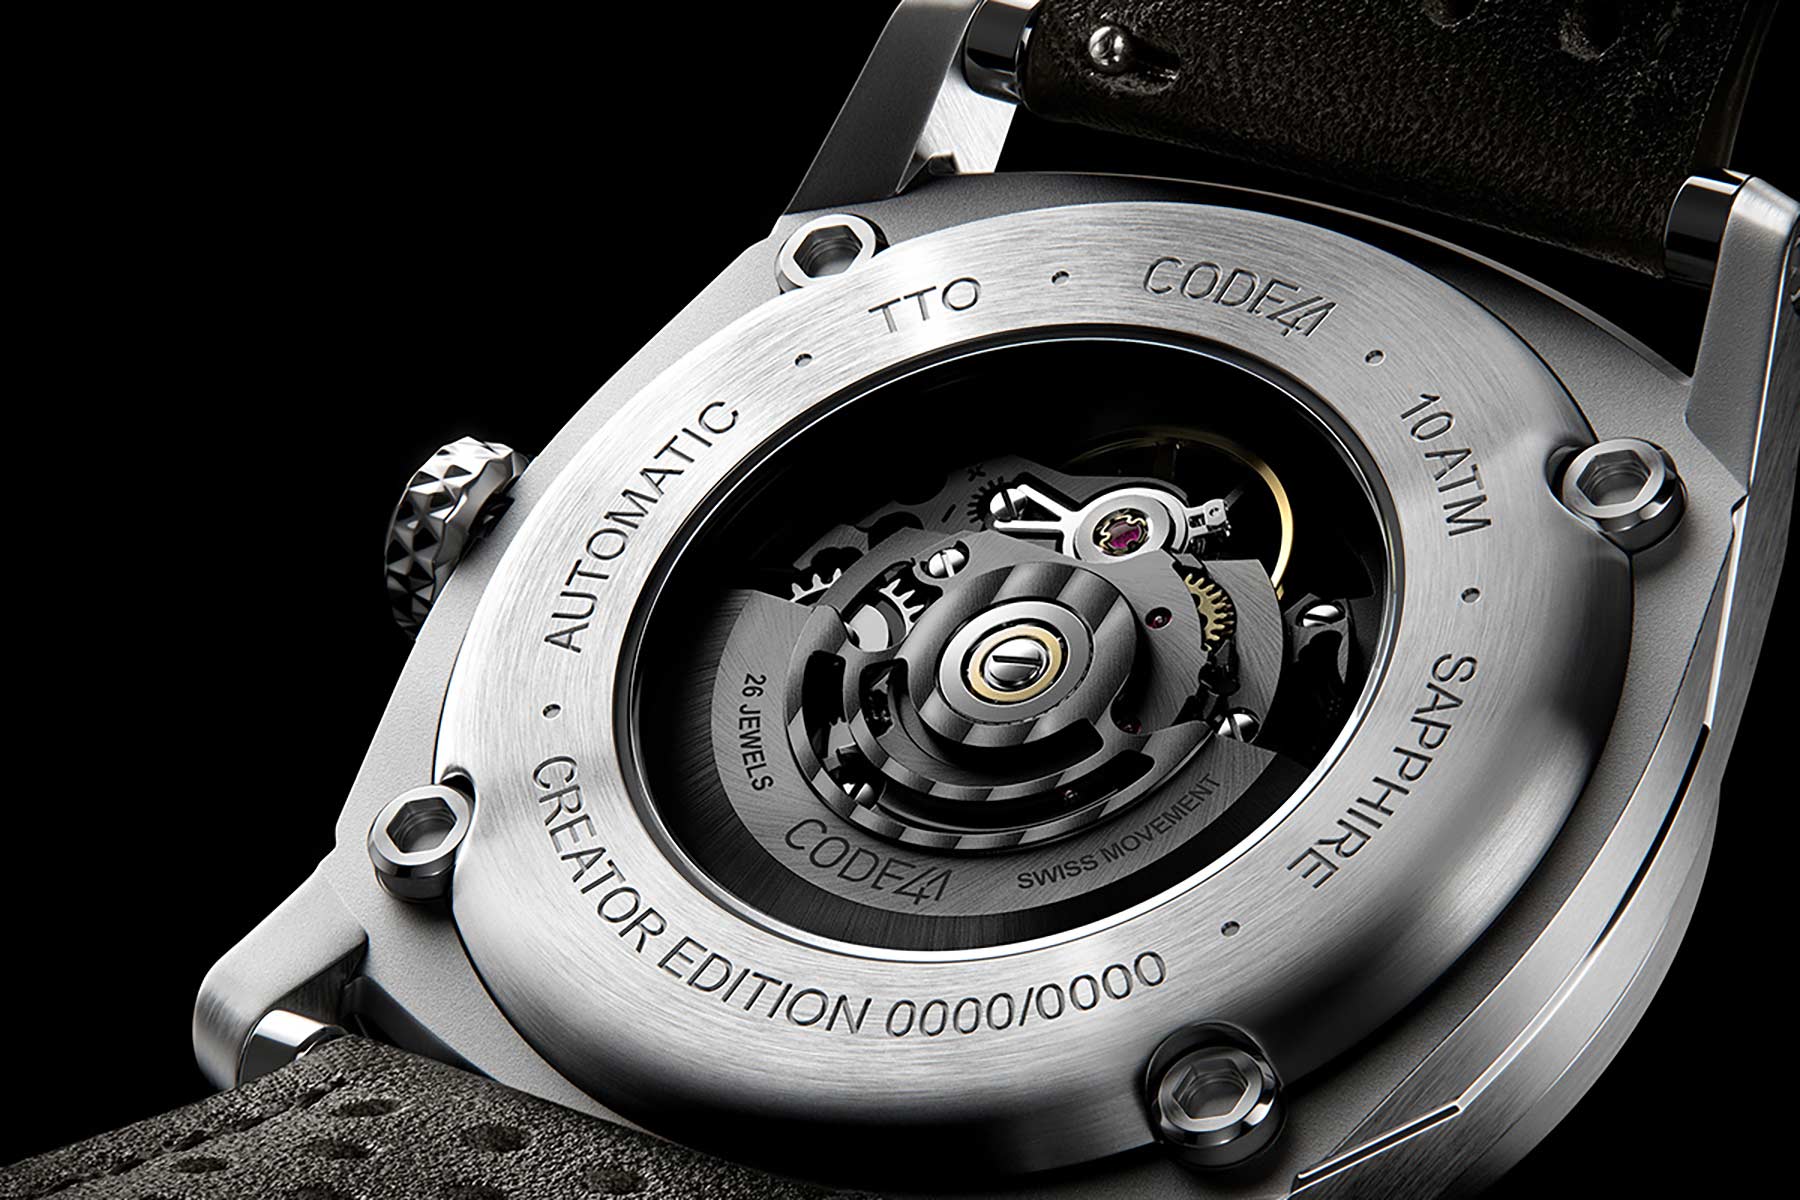 Vorverkauf der limitierten ANOMALY-T4 Design-Uhr von CODE41 gestartet ANOMALY-T4-CODE-41-uhr-03 